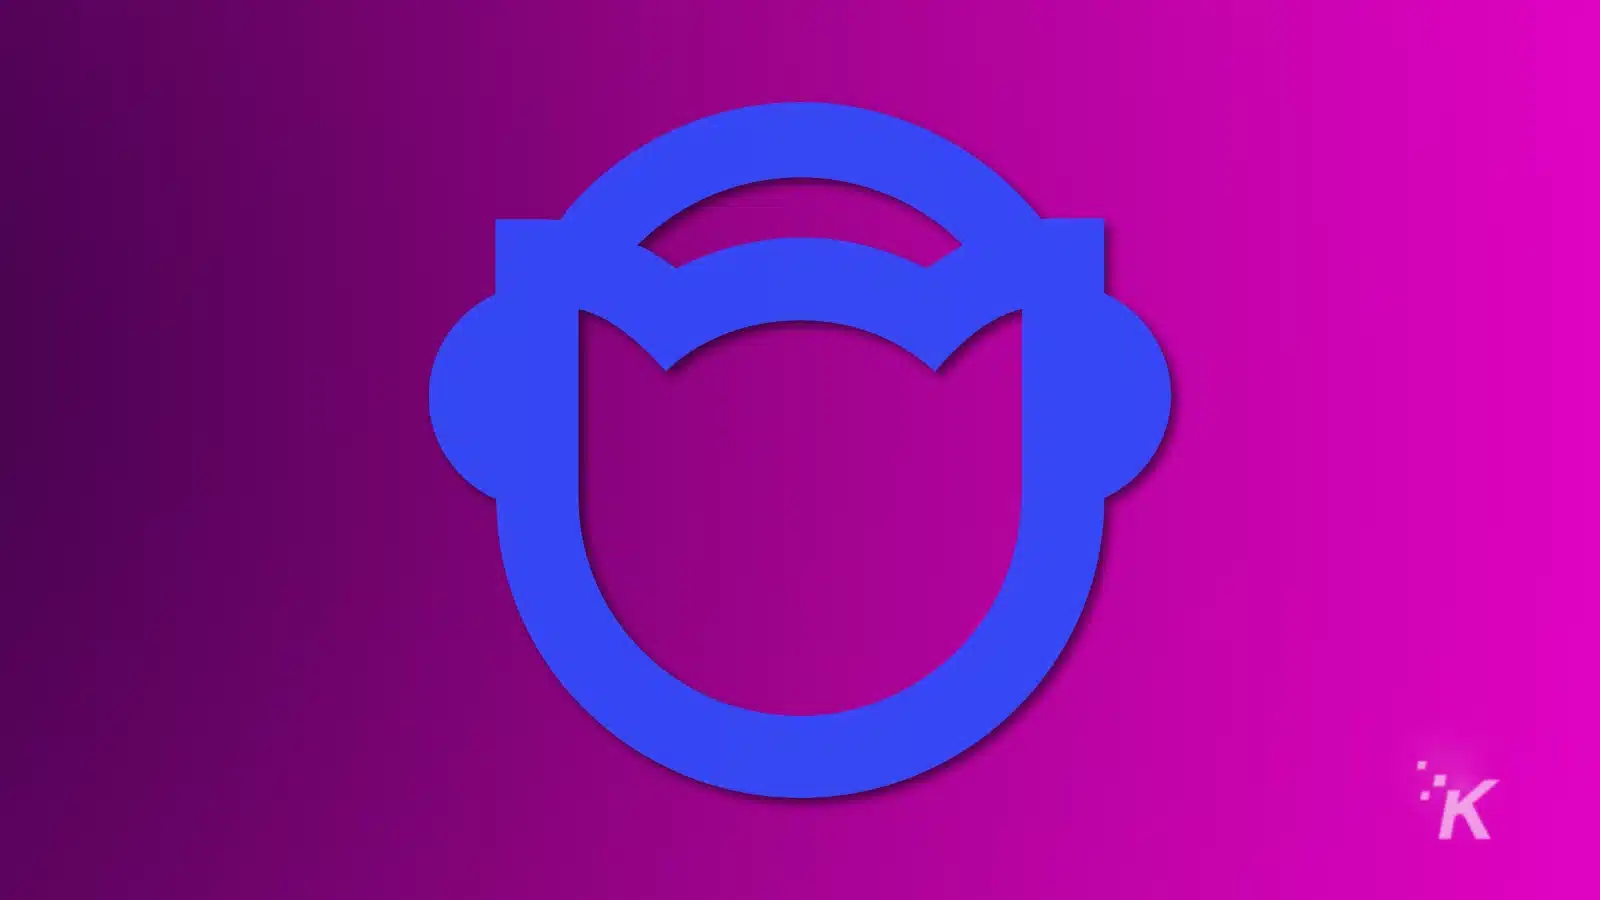 Blue napster logo on a purple background